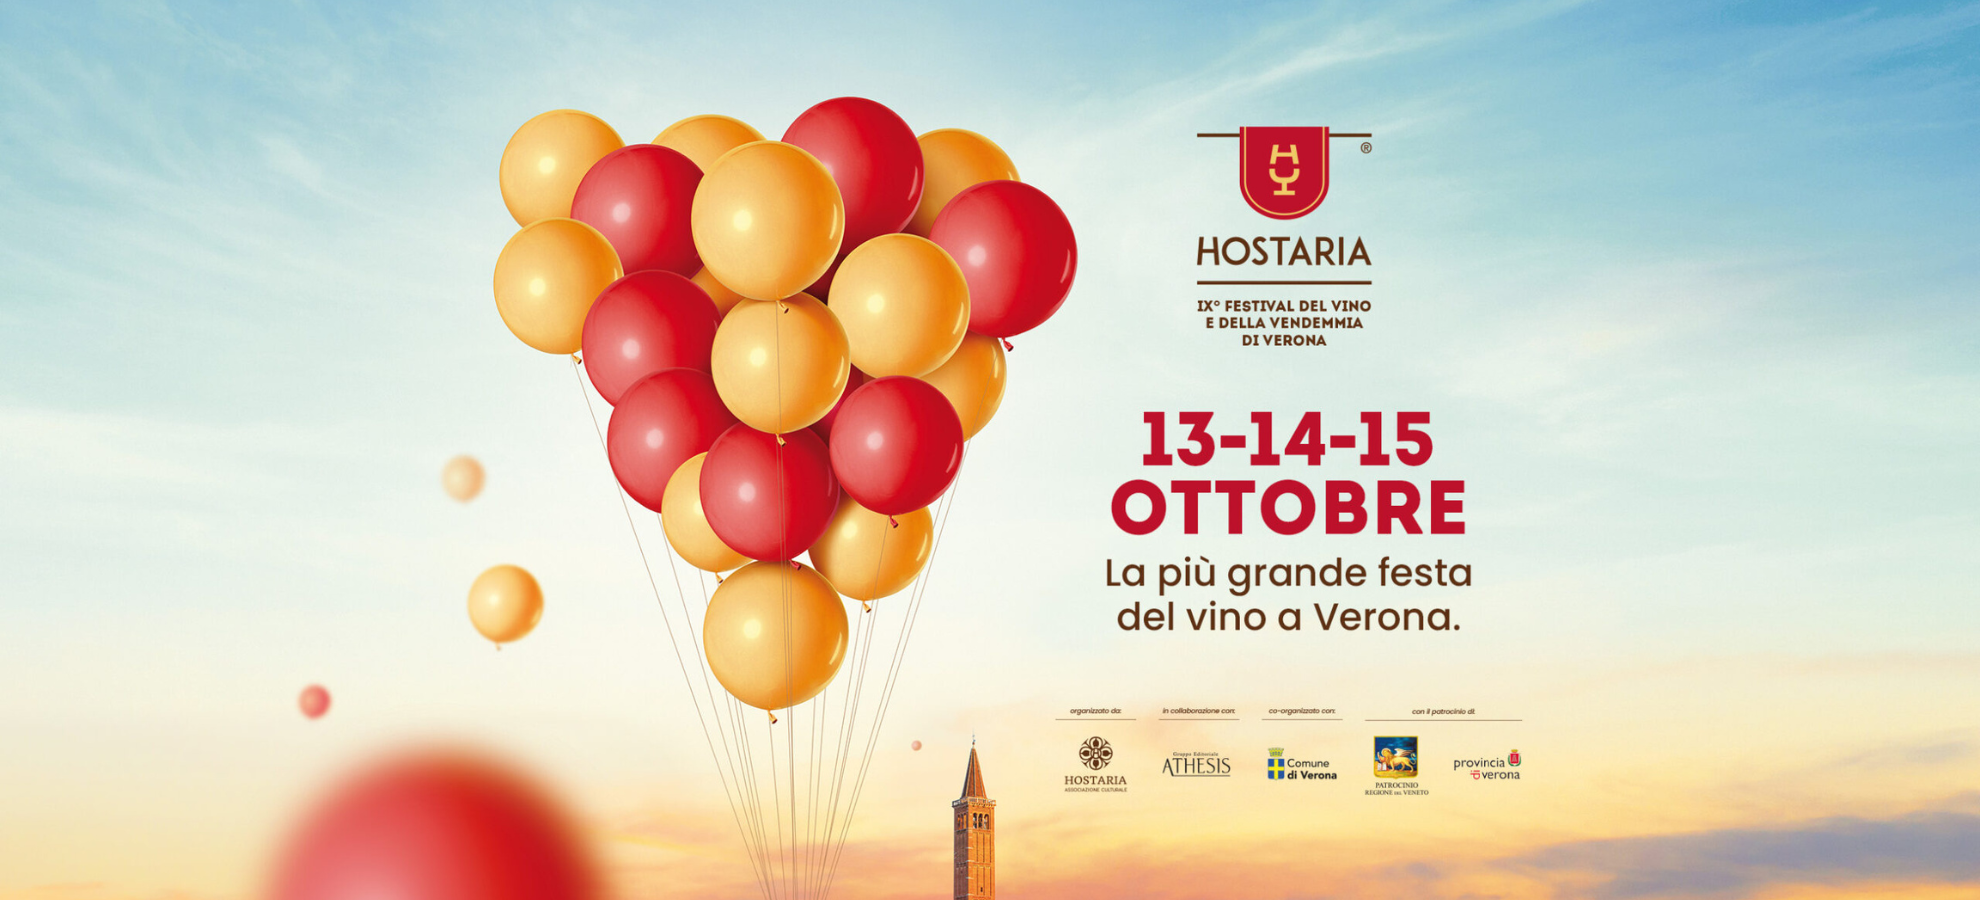 Hostaria Verona - Festival del vino e della vendemmia di Verona